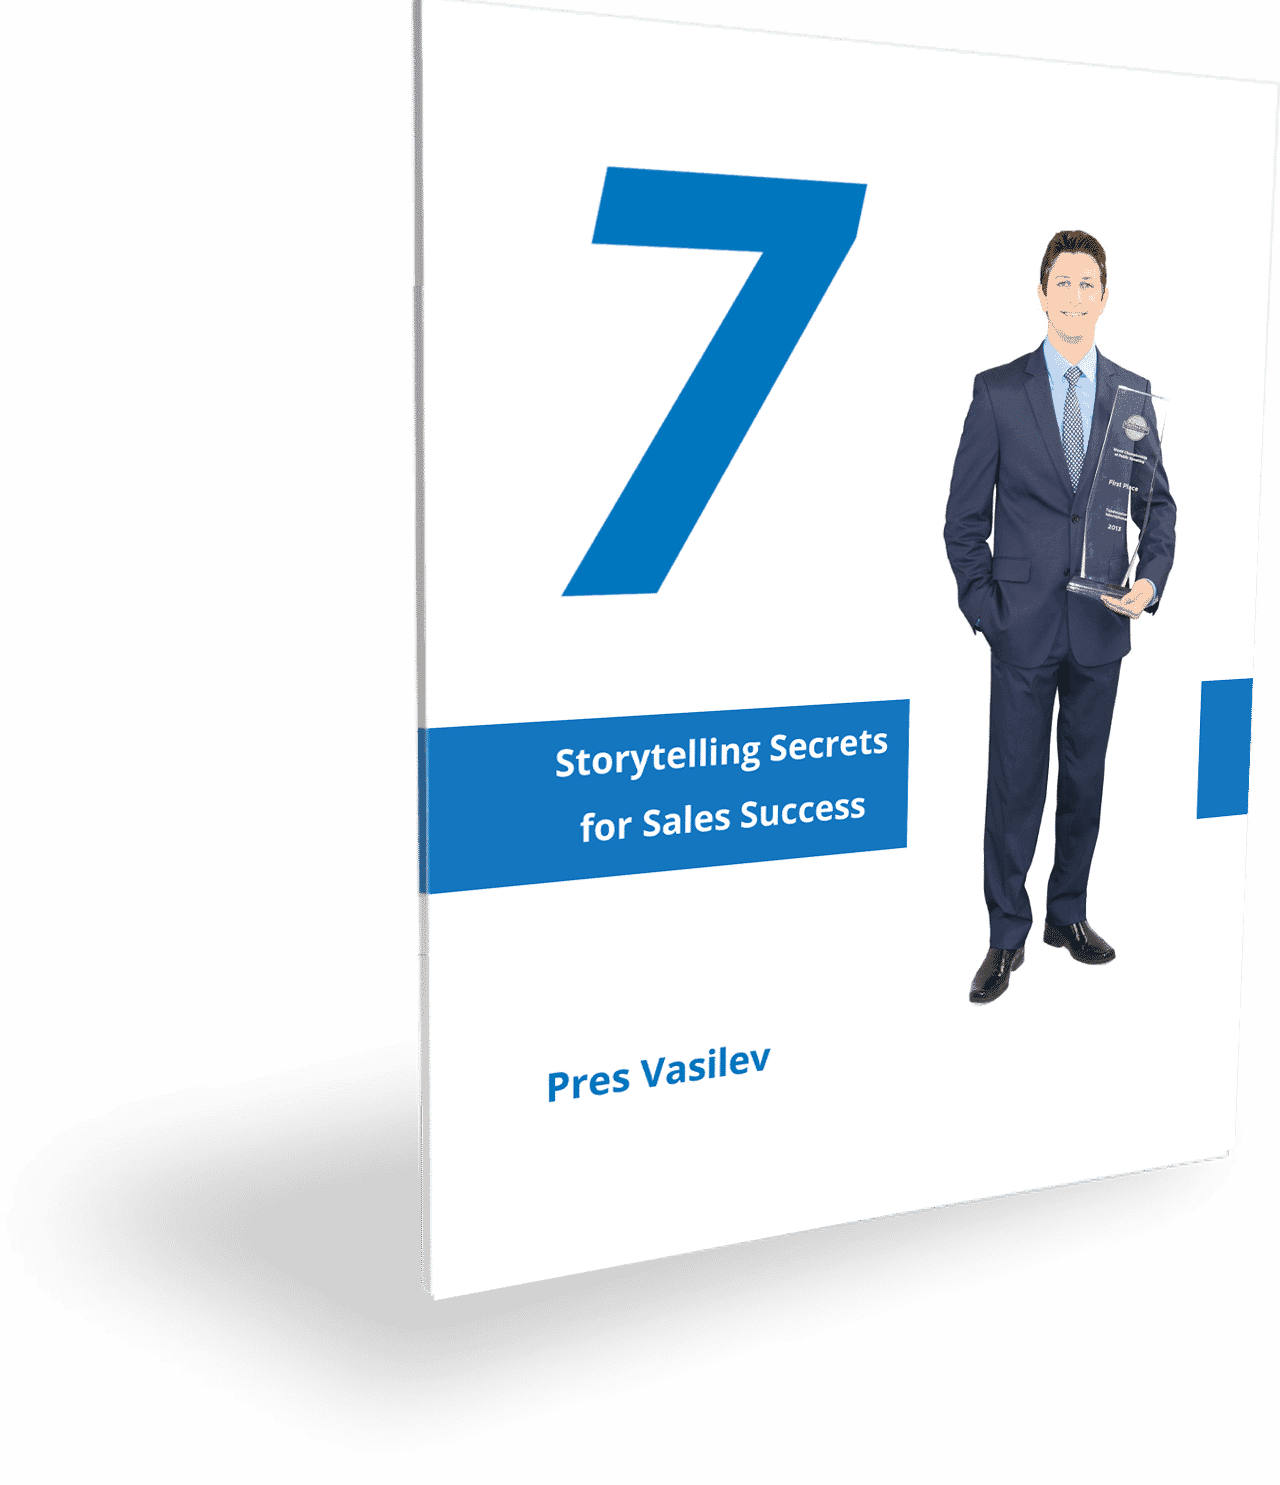 Pres-Vasilev-7-Storytelling-Secrets-for-Sales-Success